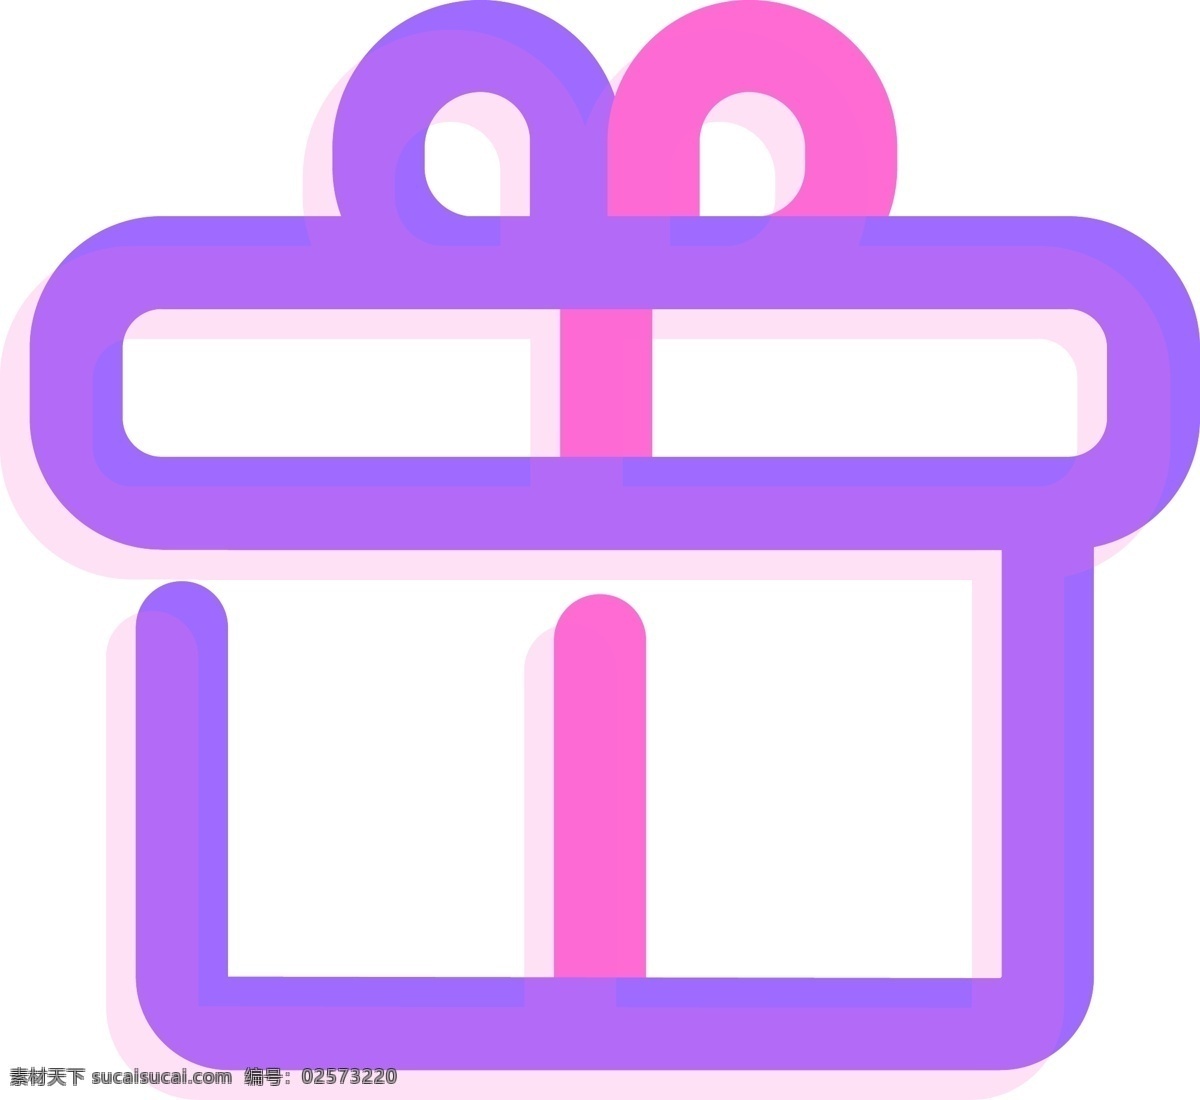 粉 紫色 荧光 礼物 矢量 图标 粉紫色礼物 荧光礼物